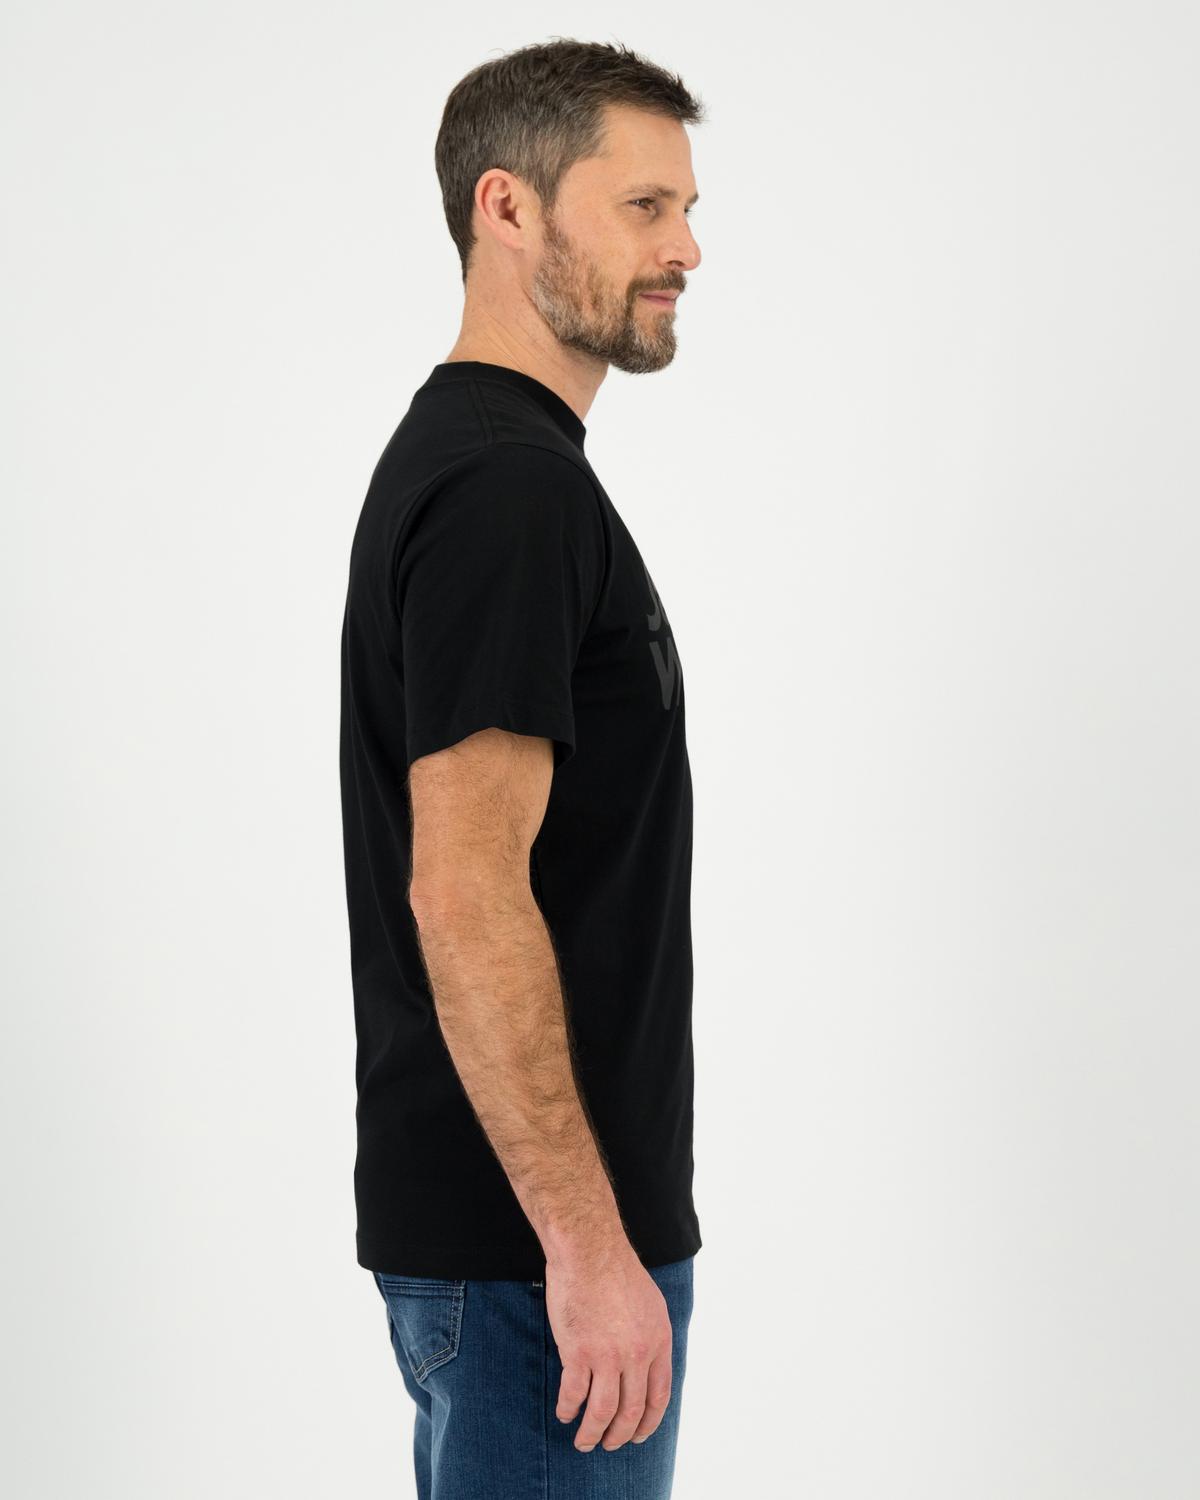 Jack Wolfskin Men’s Essential Logo Cotton T-shirt -  Black